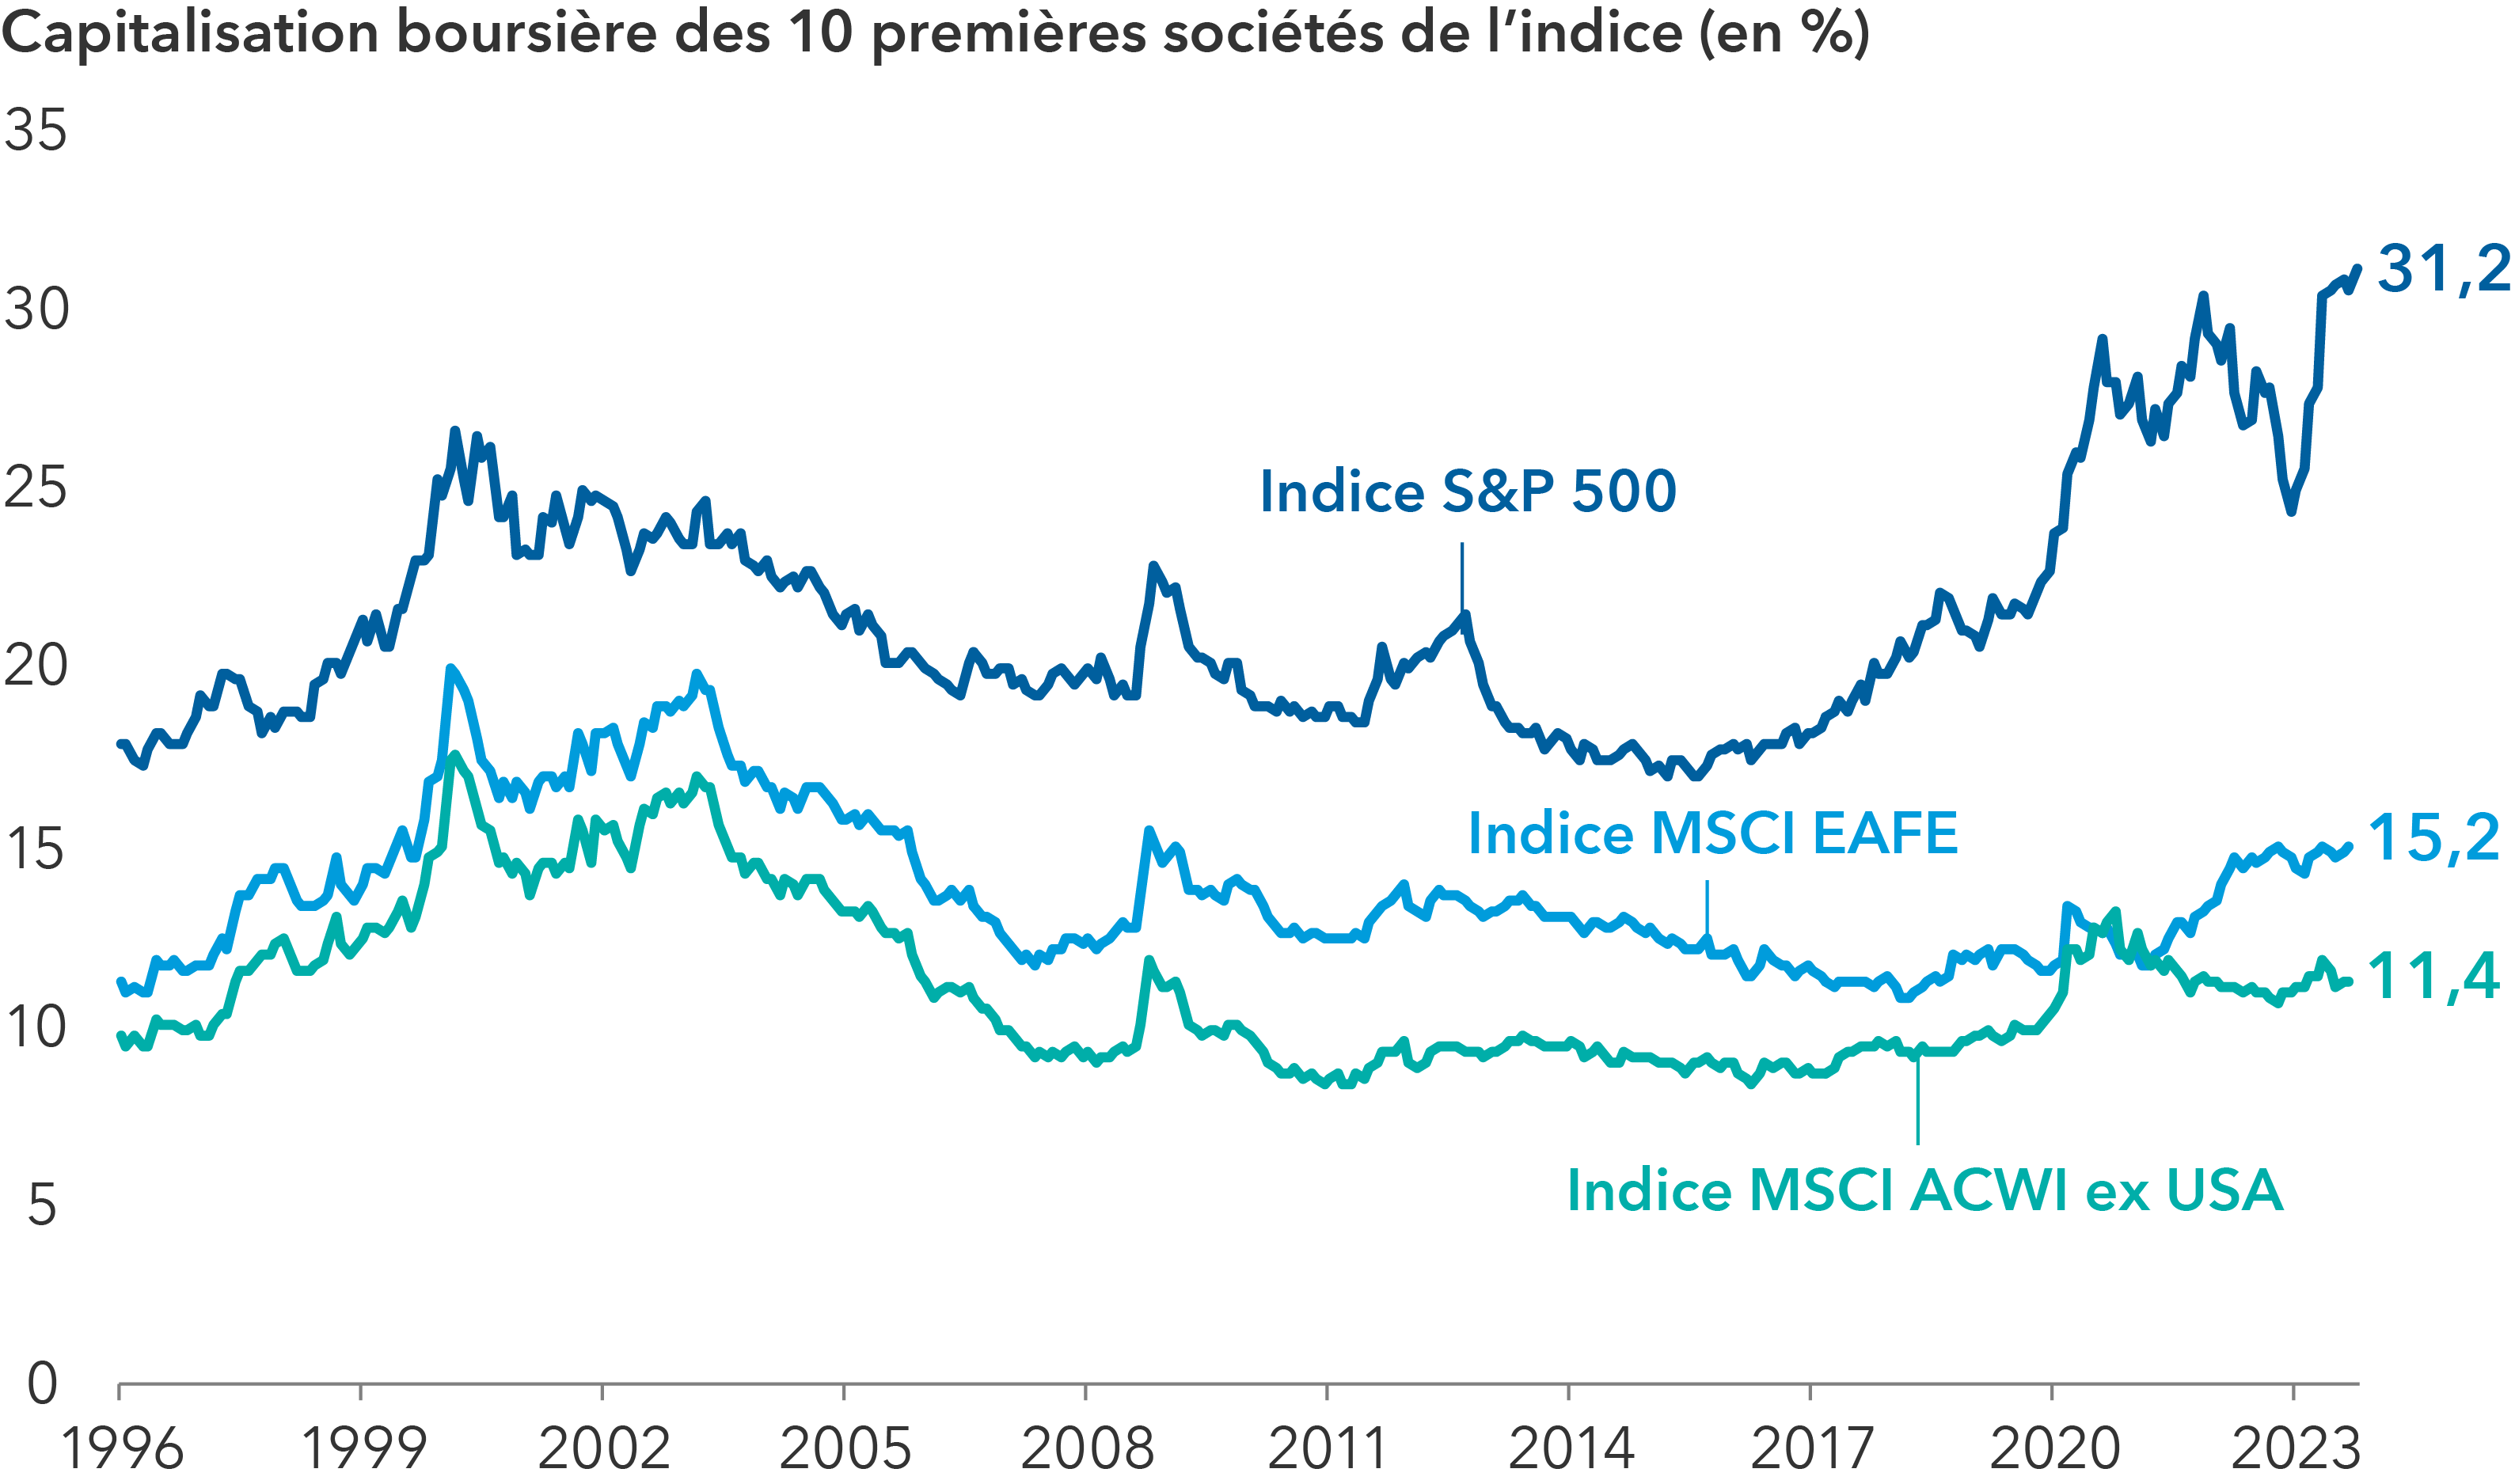 Ce graphique en courbe illustre l’évolution du poids, entre 1996 et octobre 2023, des 10 premières sociétés de trois indices actions : le S&P 500, le MSCI EAFE et le MSCI ACWI ex USA. Au 31 octobre 2023, elles représentaient respectivement : 31,2 % de l’indice S&P 500, 15,2 % de l’indice MSCI EAFE et 11,4 % de l’indice MSCI ACWI ex USA.